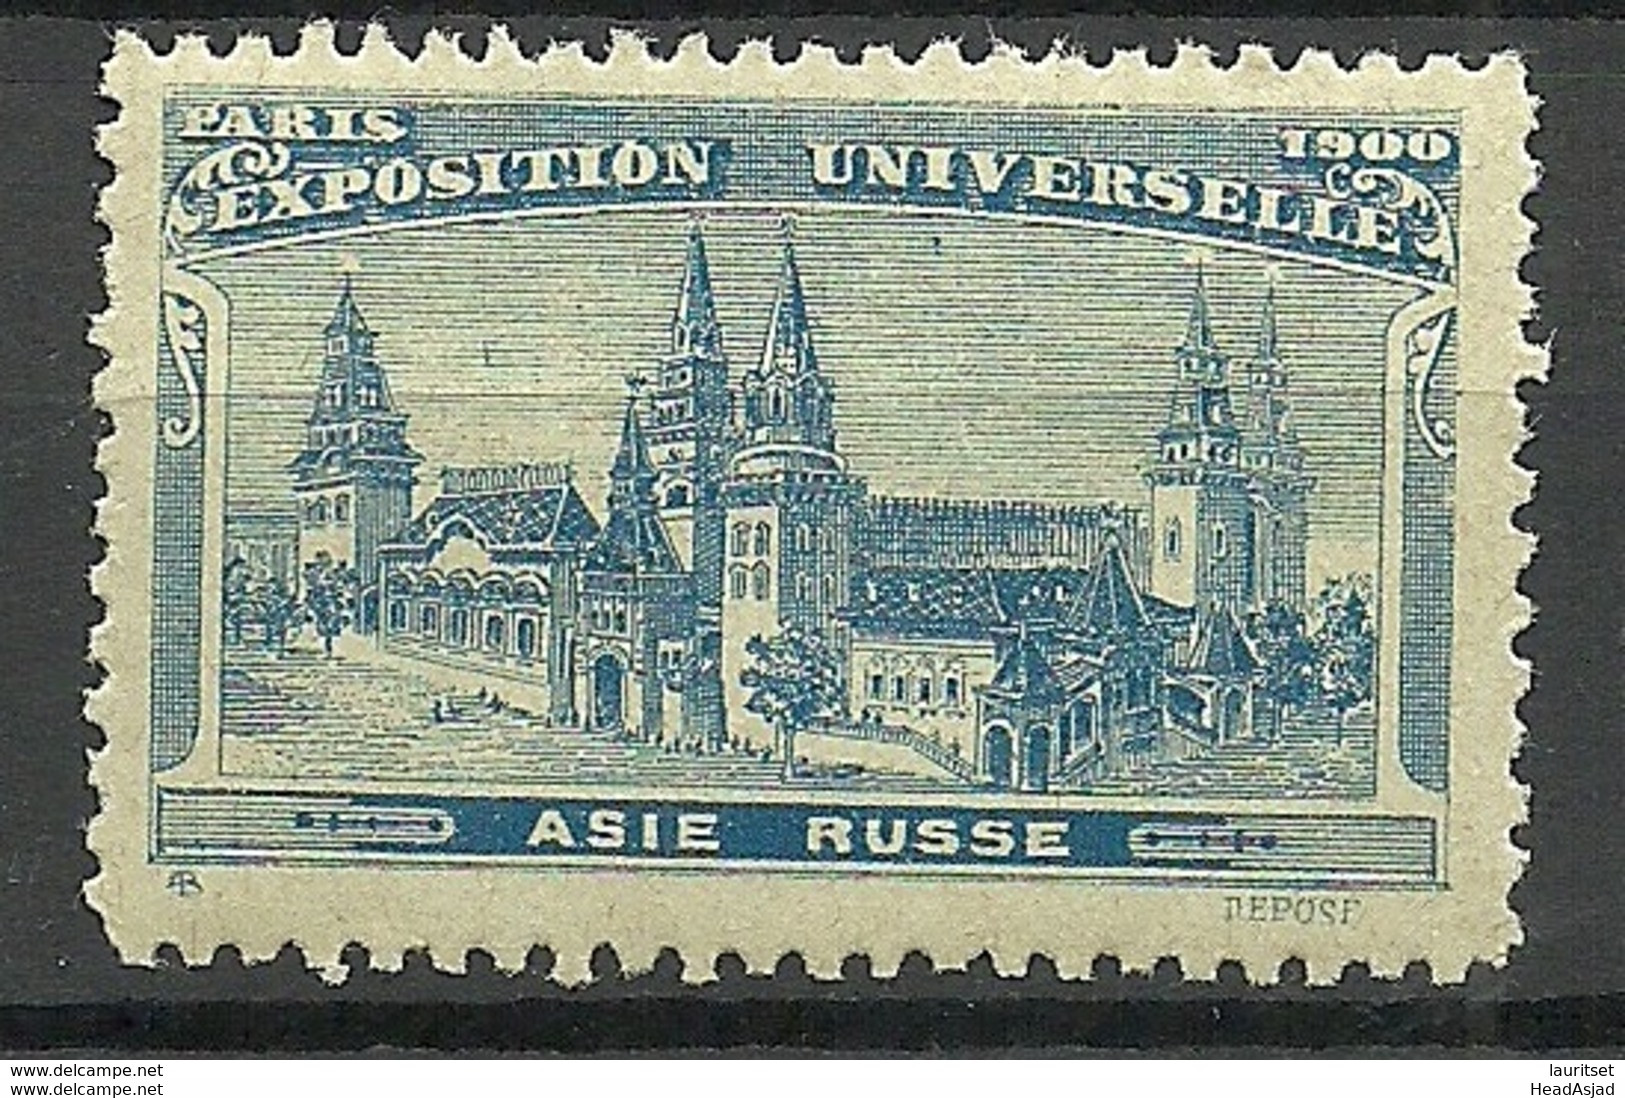 France 1900 EXPOSITION UNIVERSELLE Paris Asie Russe Pavillon MNH - 1900 – Paris (Frankreich)